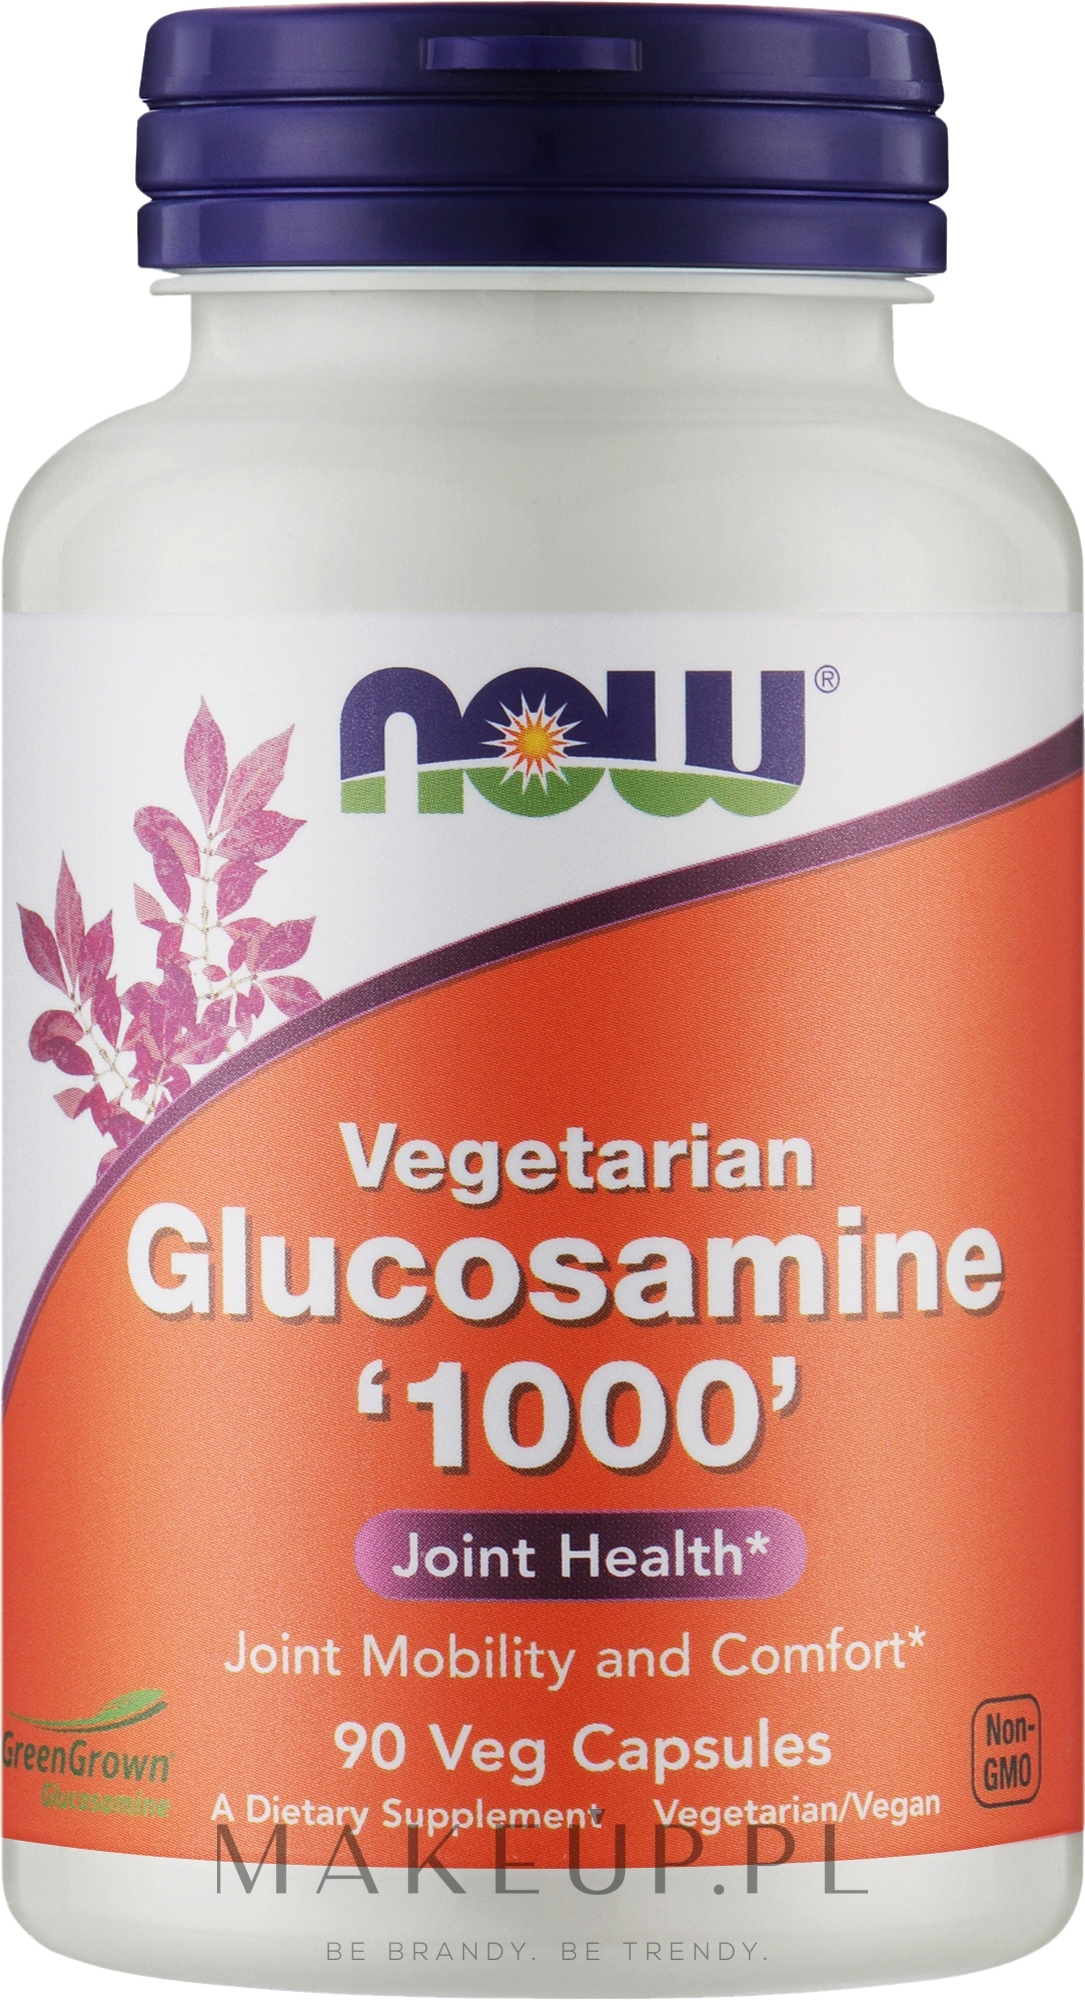 Wegetariański suplement diety z glukozaminą w kapsułkach, 1000 mg - Now Foods Glucosamine Vegetarian — Zdjęcie 90 szt.